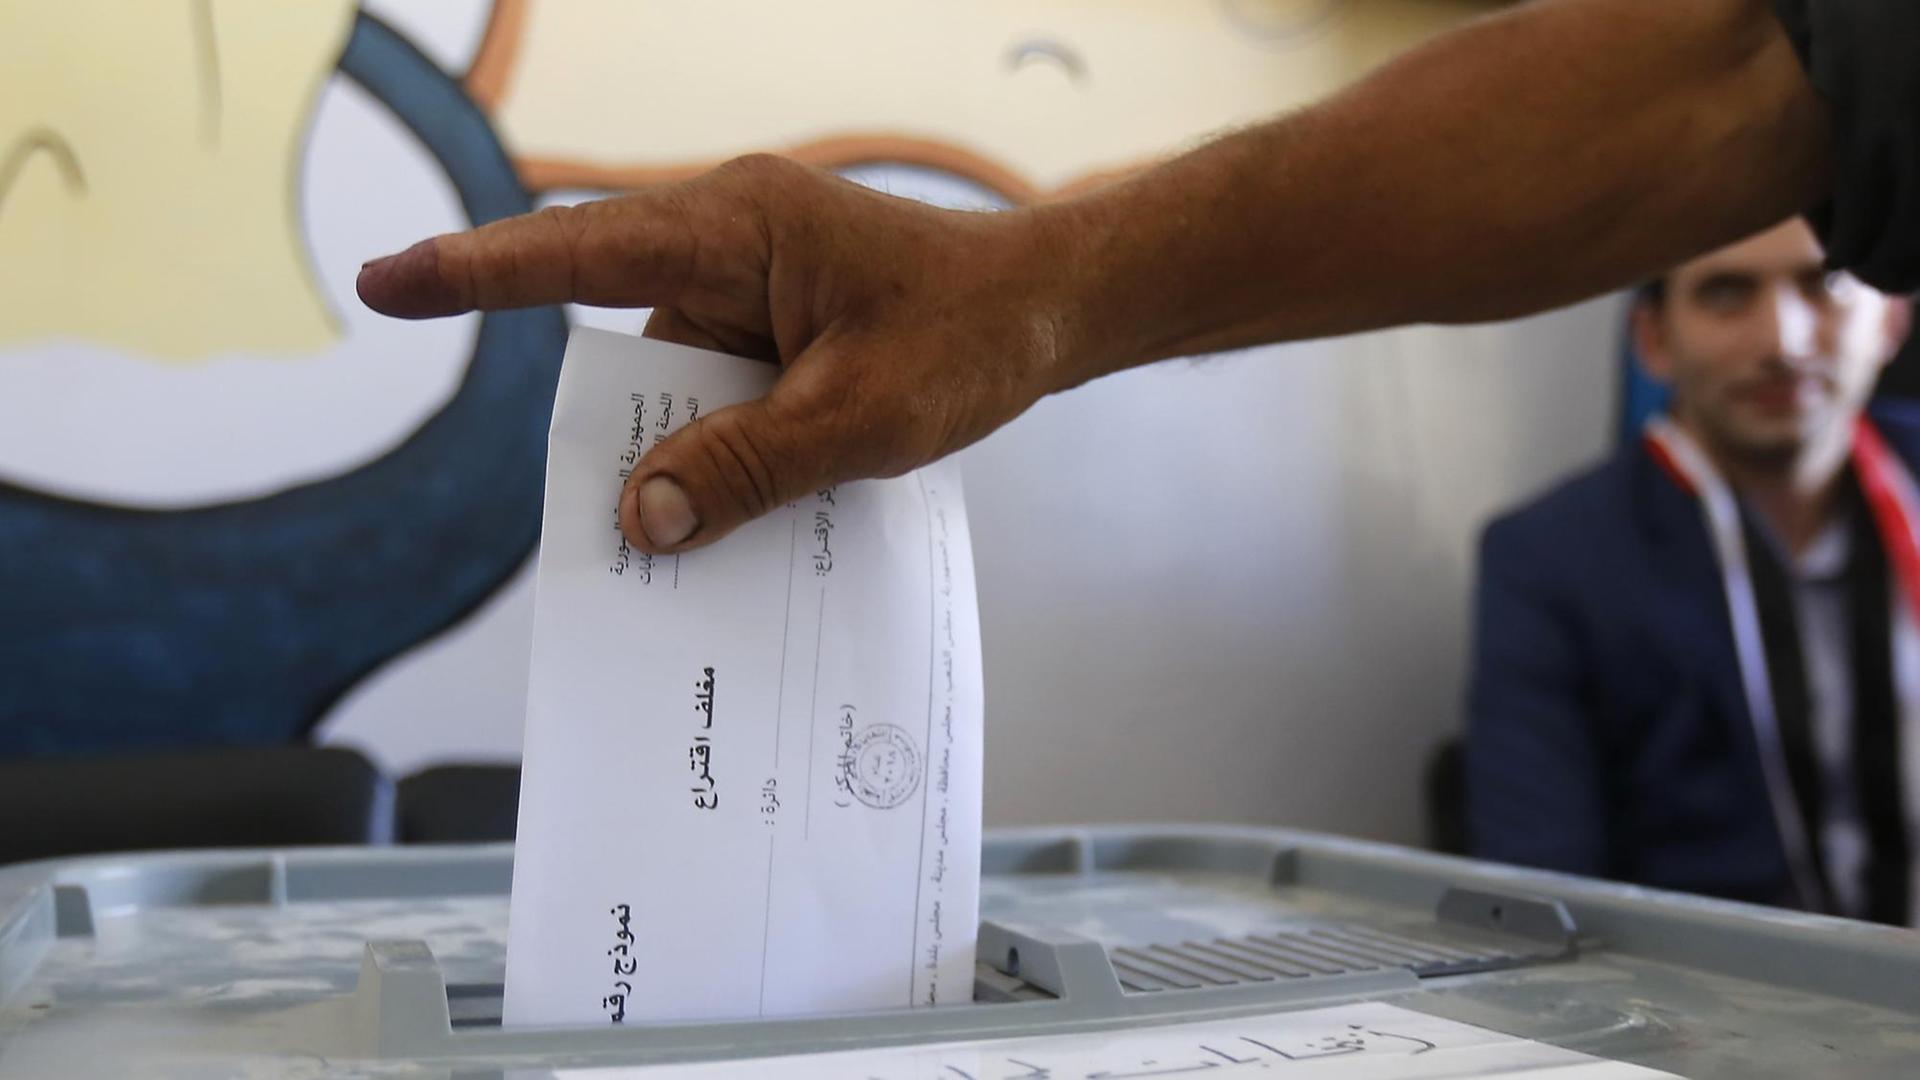 Man sieht die Hand eines Mannes, der einen Wahlzettel in eine Wahlurne wirft.